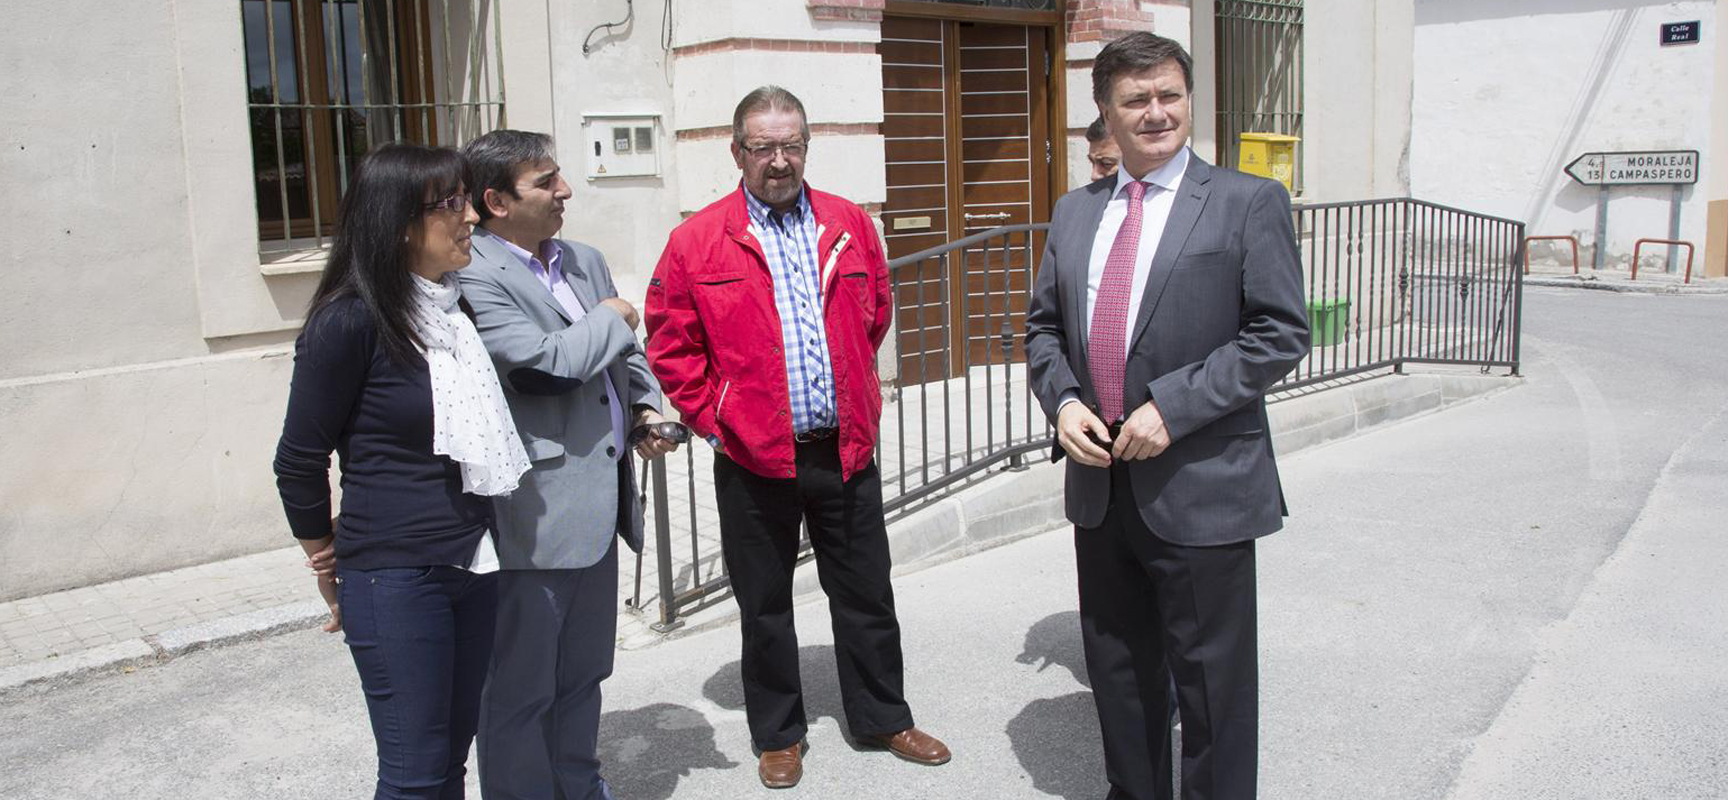 La alcaldesa de Frumales junto al Presidente de la Diputación y los diputados ante el Ayuntamiento.